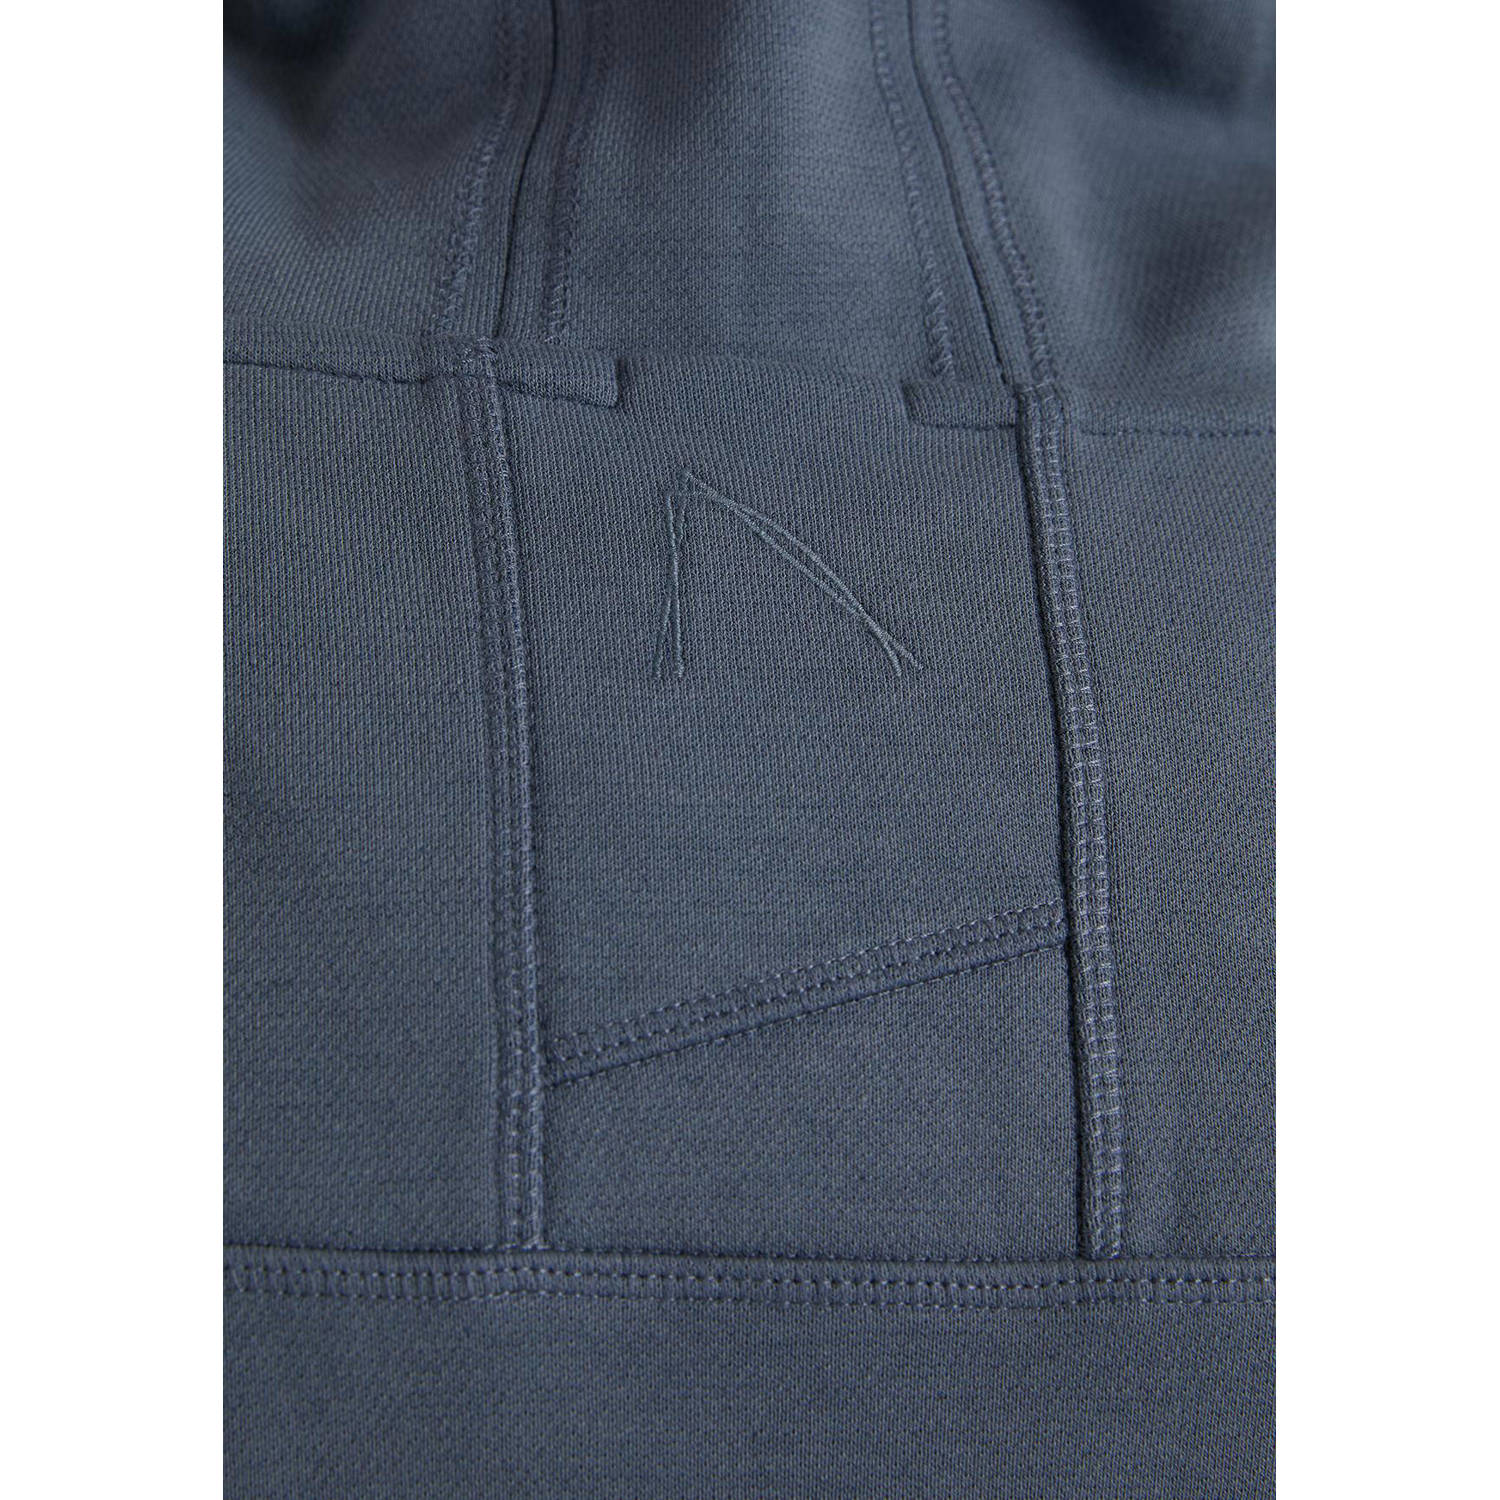 CHASIN' hoodie HARPER met logo medium blue